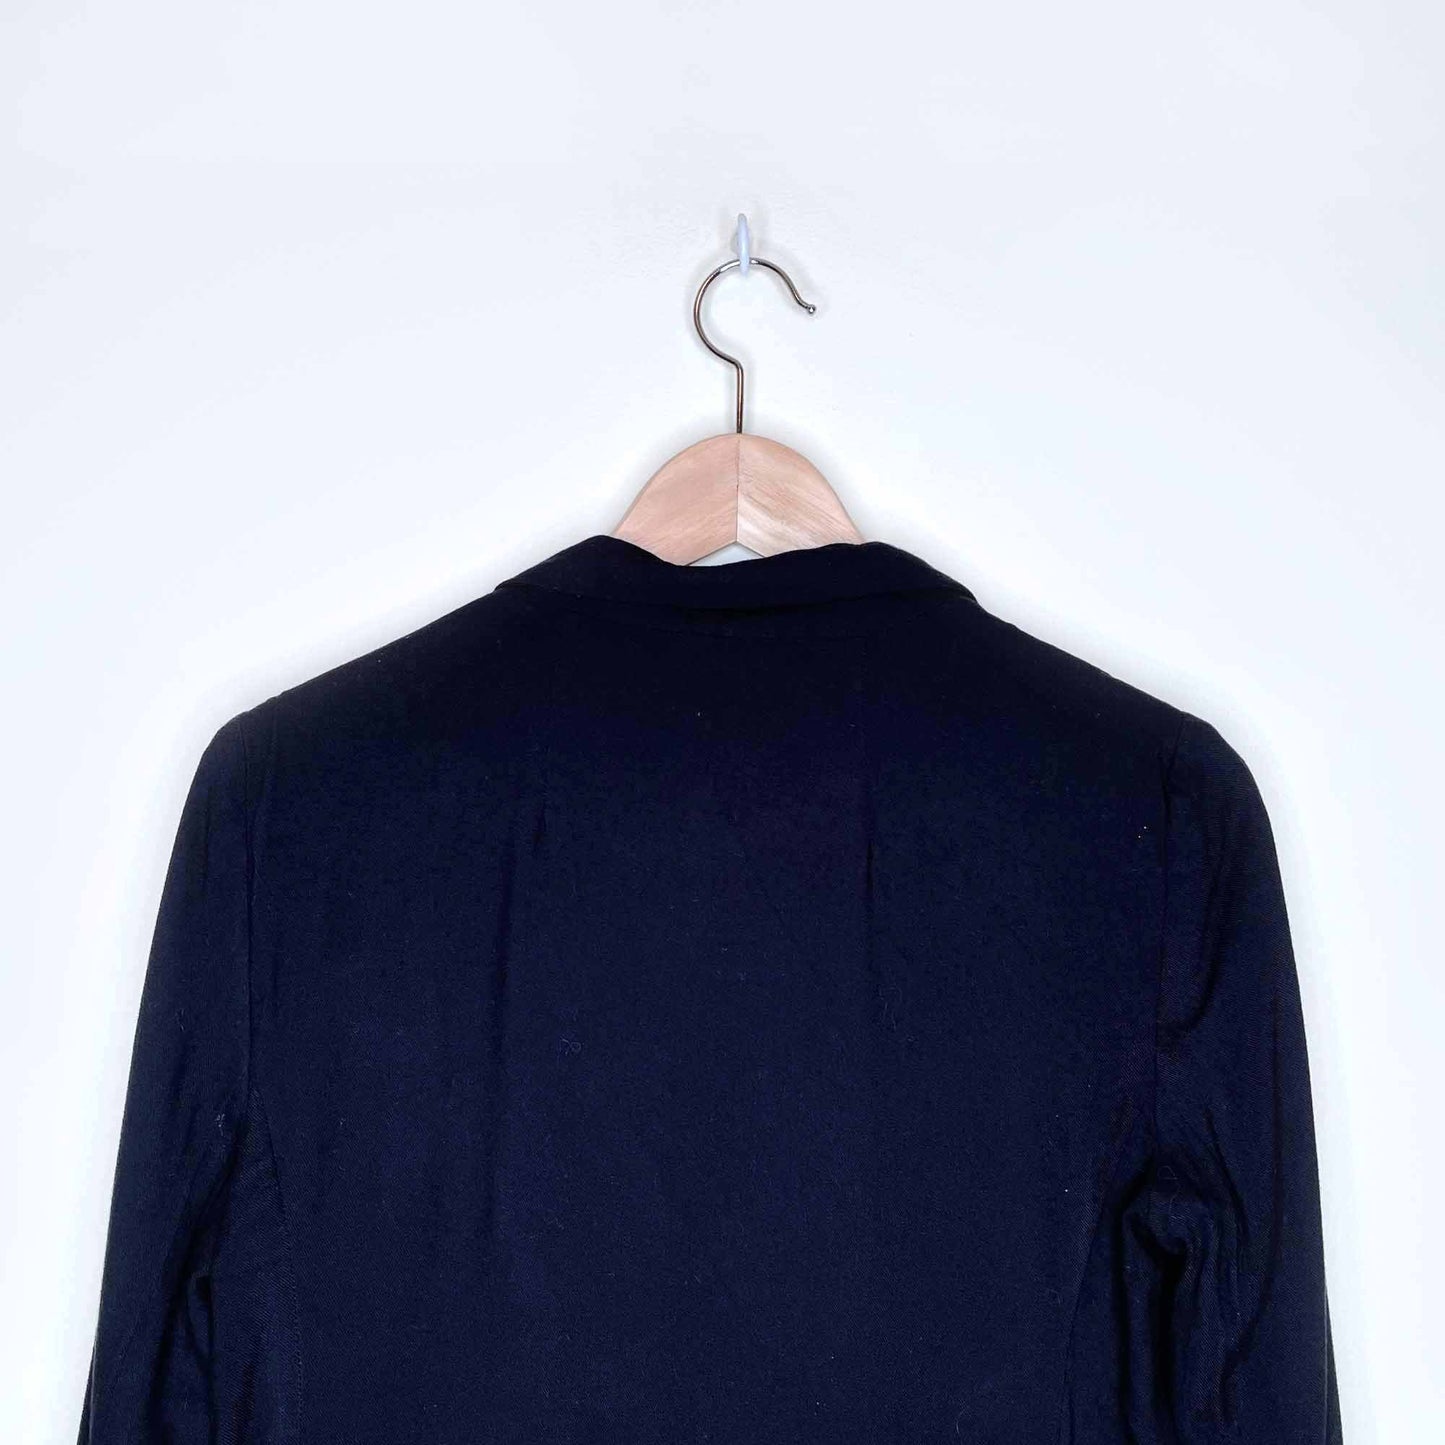 talula kent open black casual blazer jacket - size 2